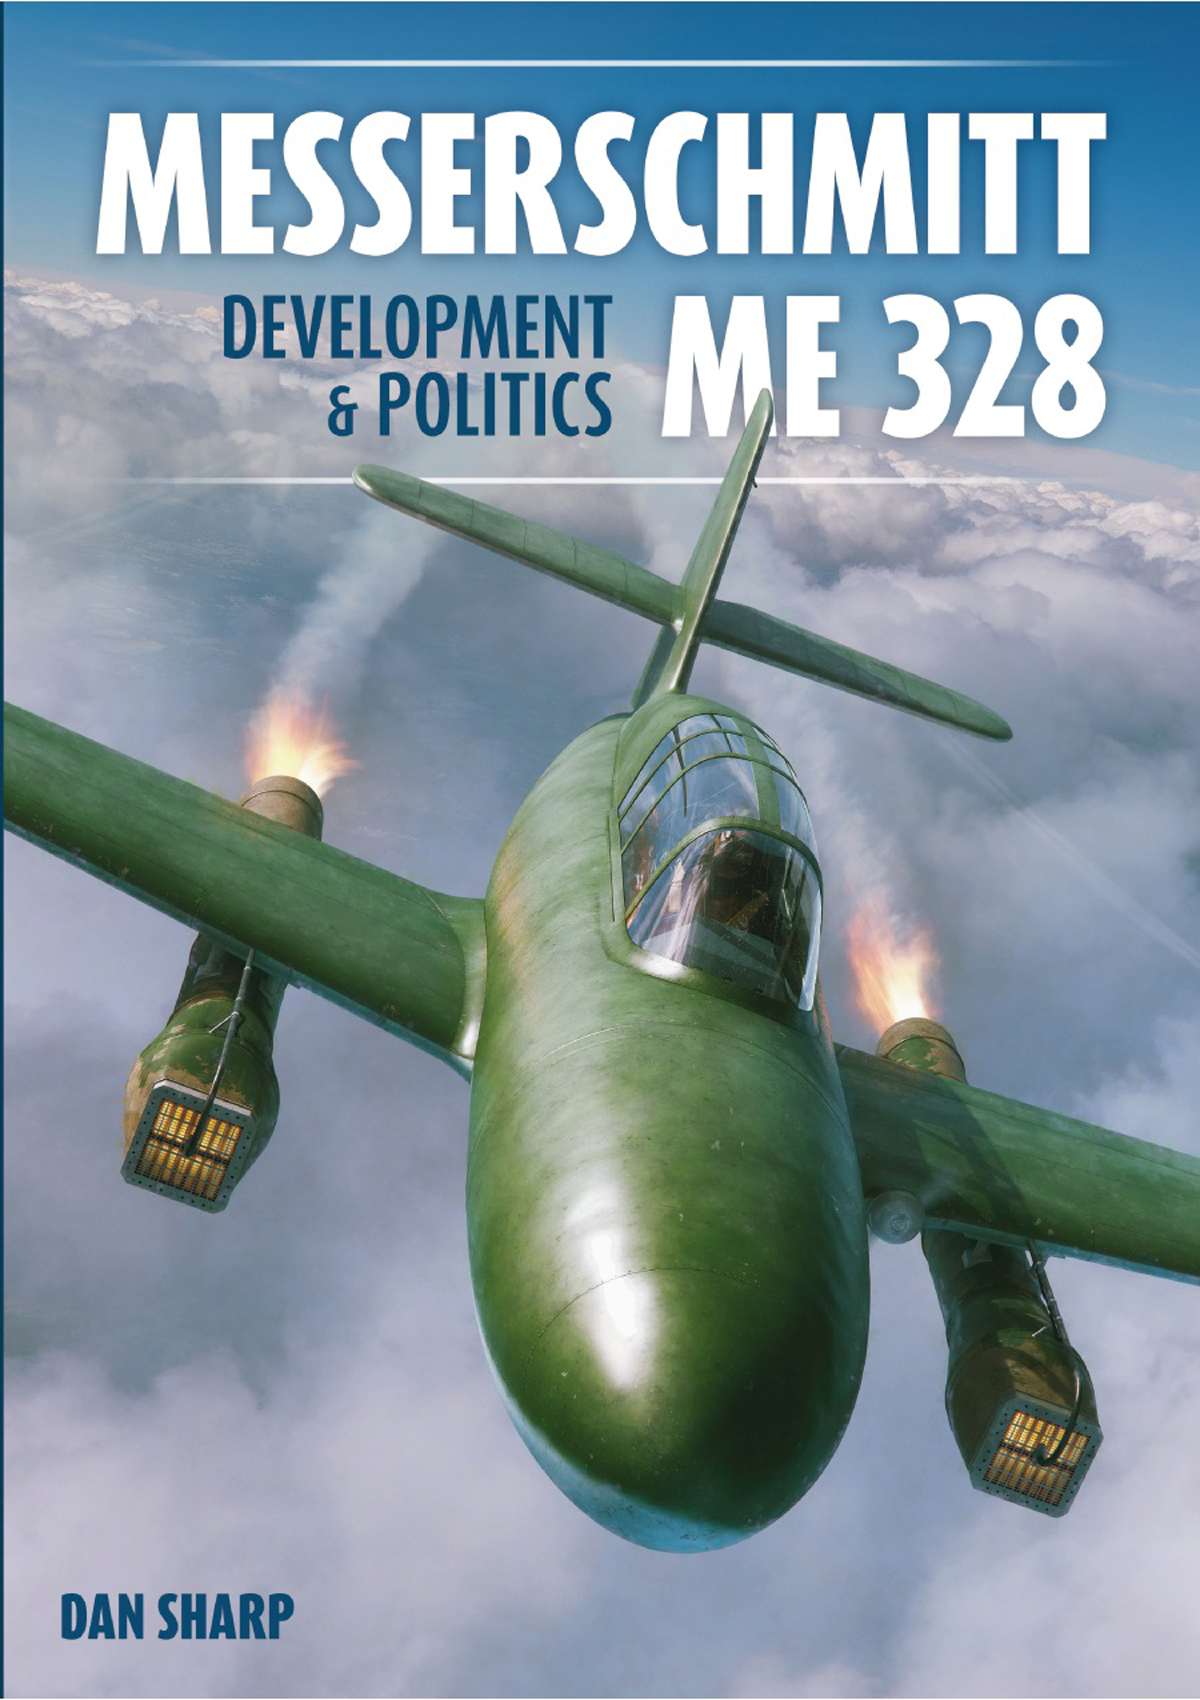 Messerschmitt Me 328 Development & Politics